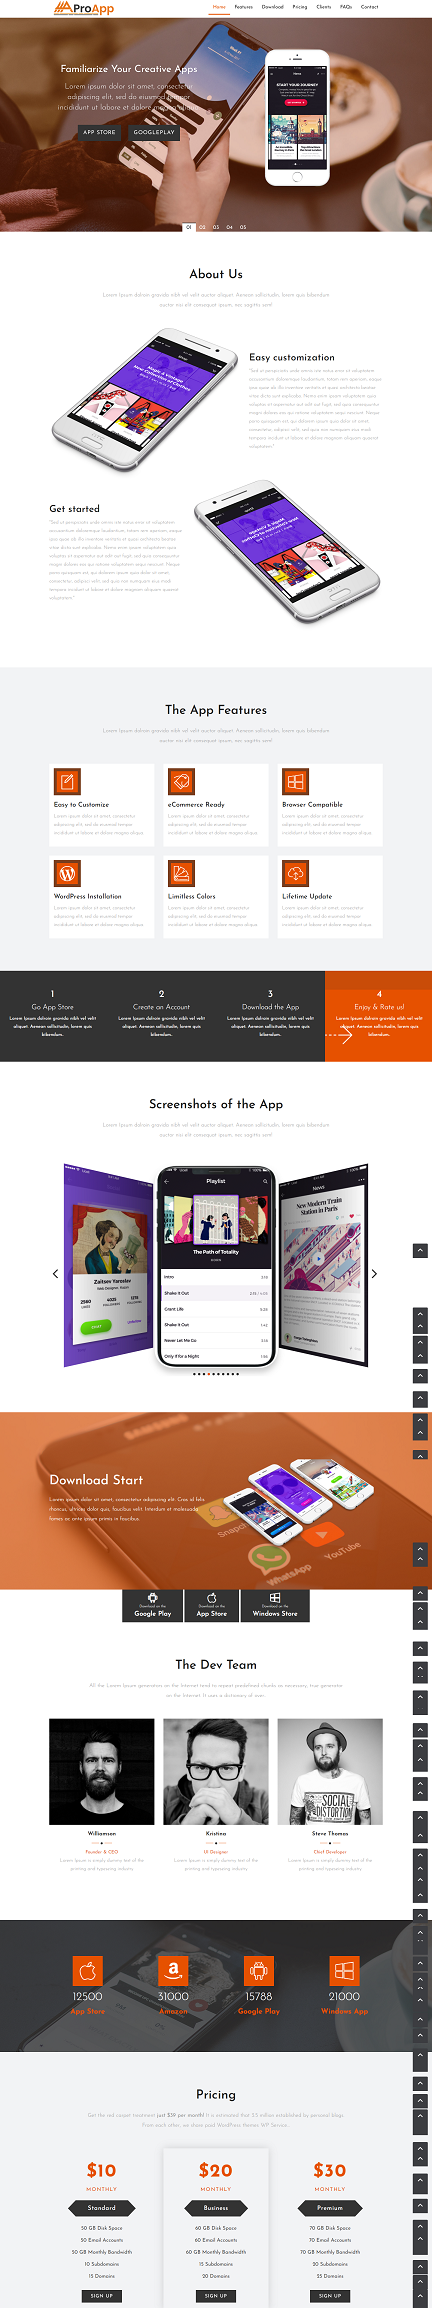 简约创意设计手机app展示网站模板